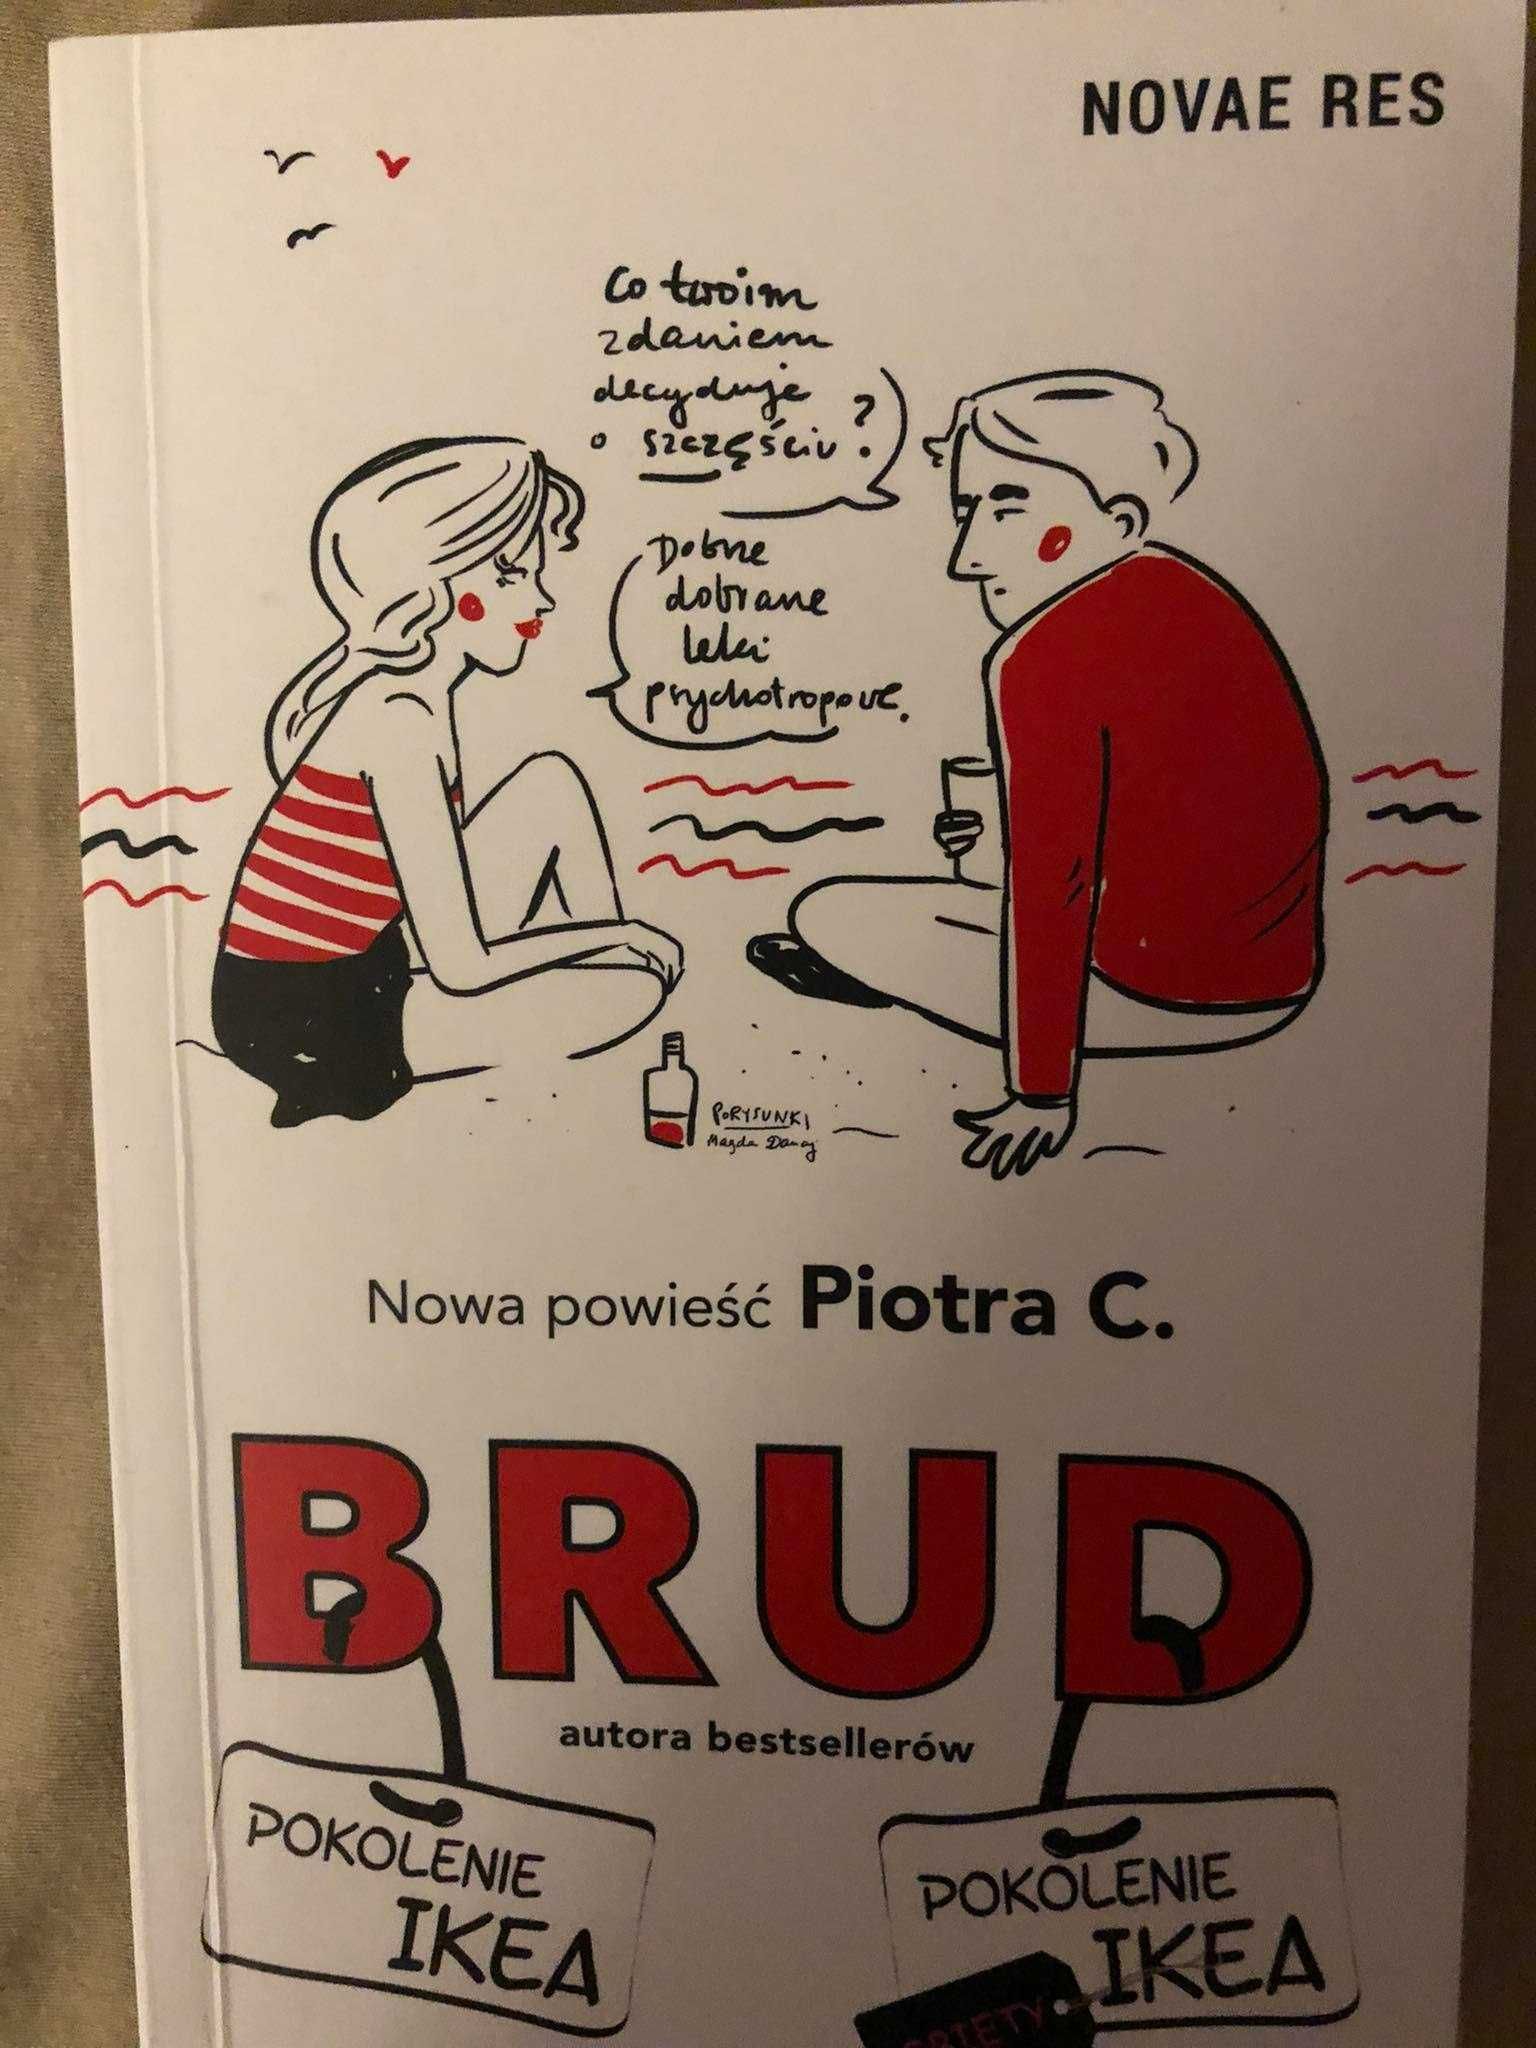 Brud - Piotr C. (Pokolenie Ikea)